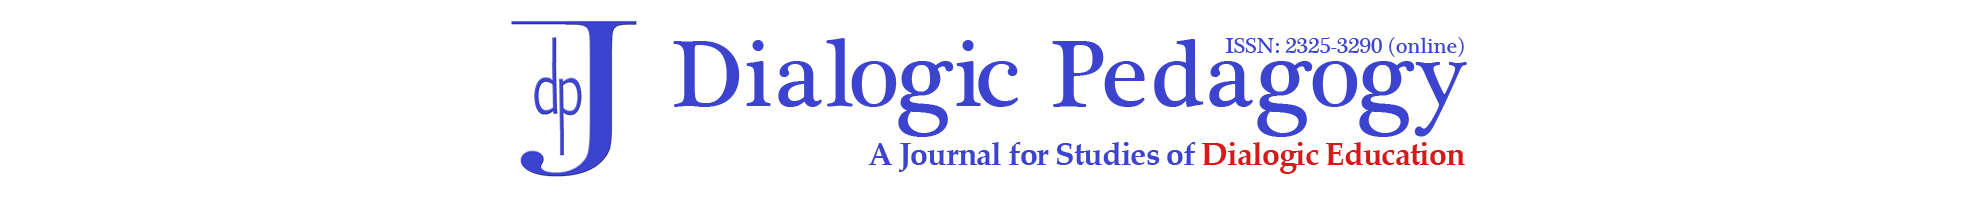 Dialogic Pedagogy: An International Online Journal